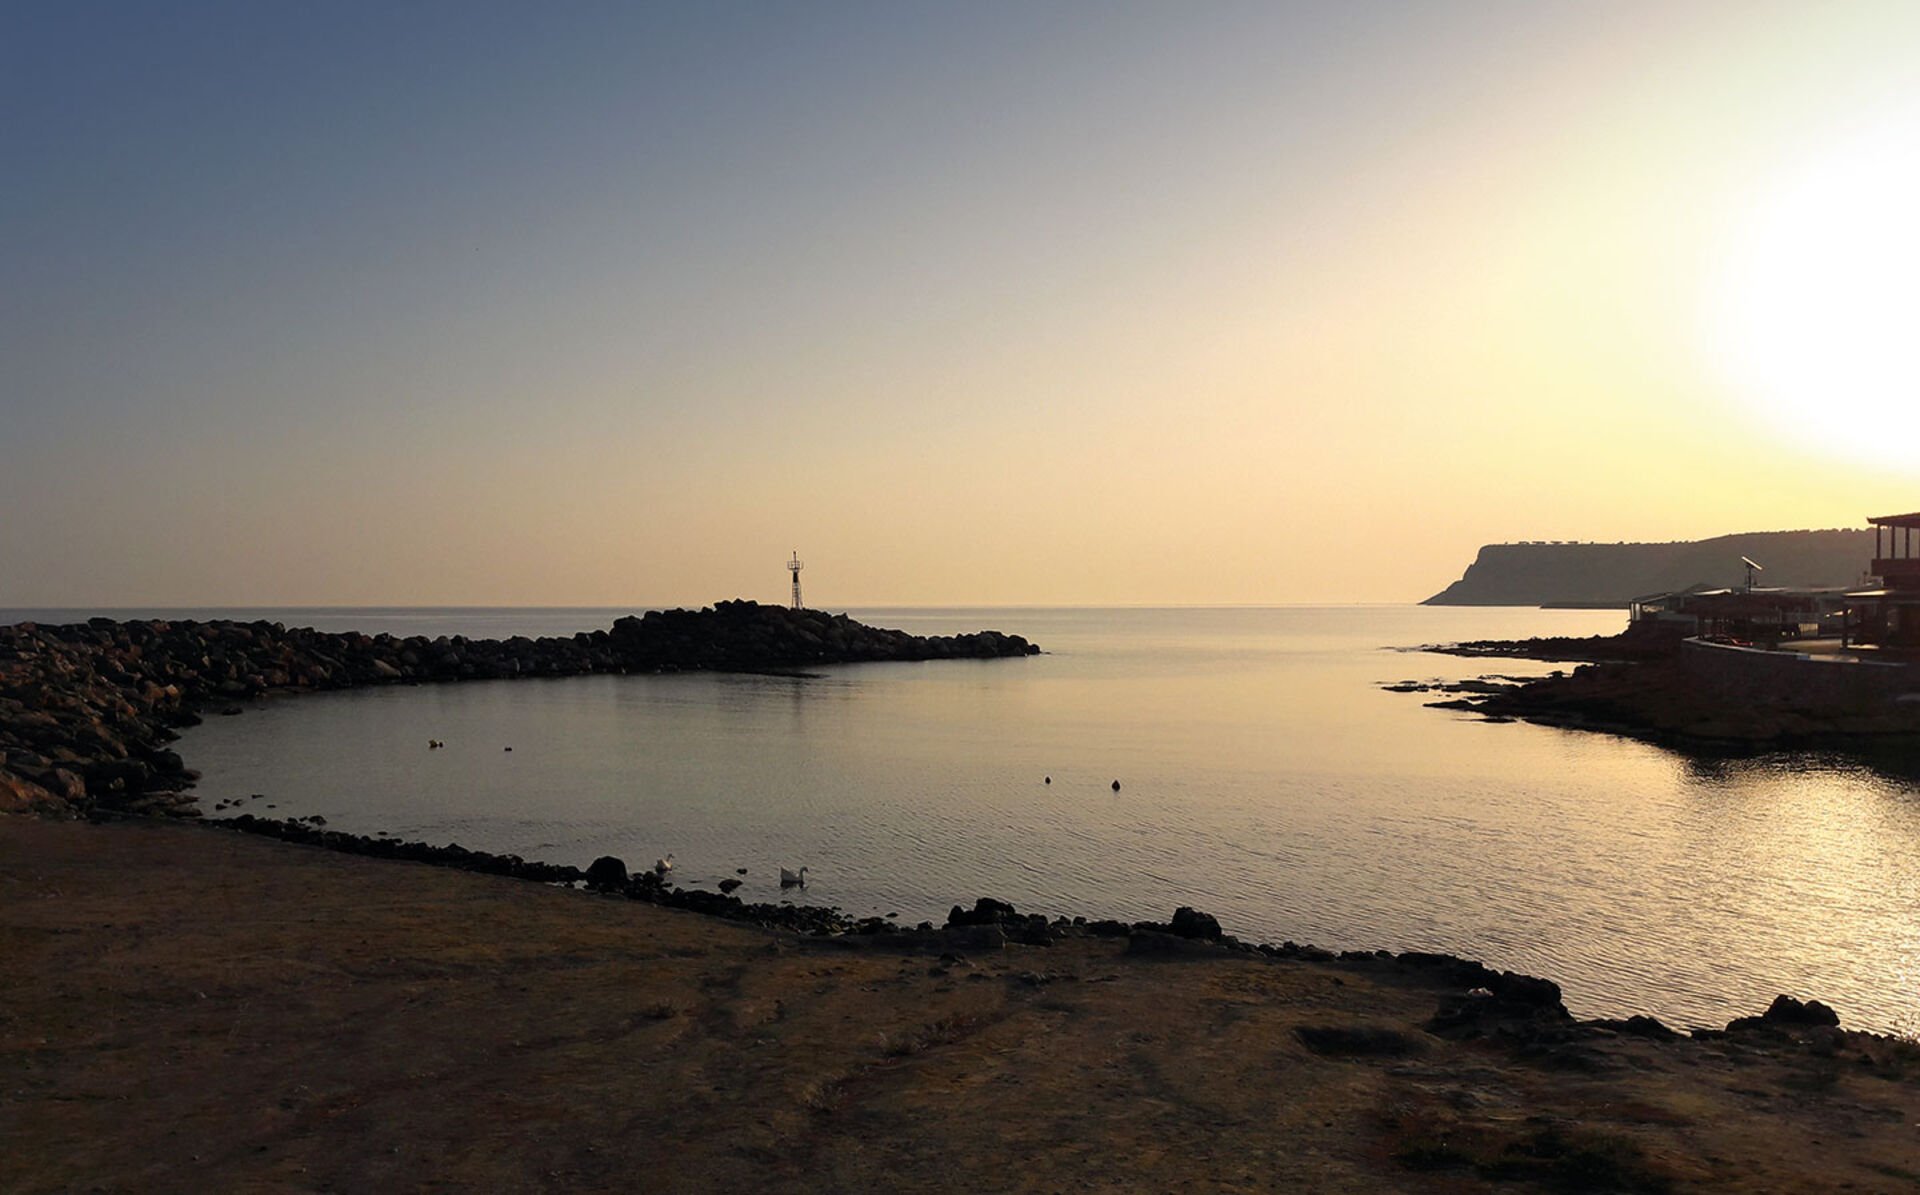  Keine Menschenseele weit und breit und die ganze Hafeneinfahrt in herrlicher Sonnenaufgangsstimmung für mich alleine: So gute Bedingungen sind am Mittelmeer eine Seltenheit.  